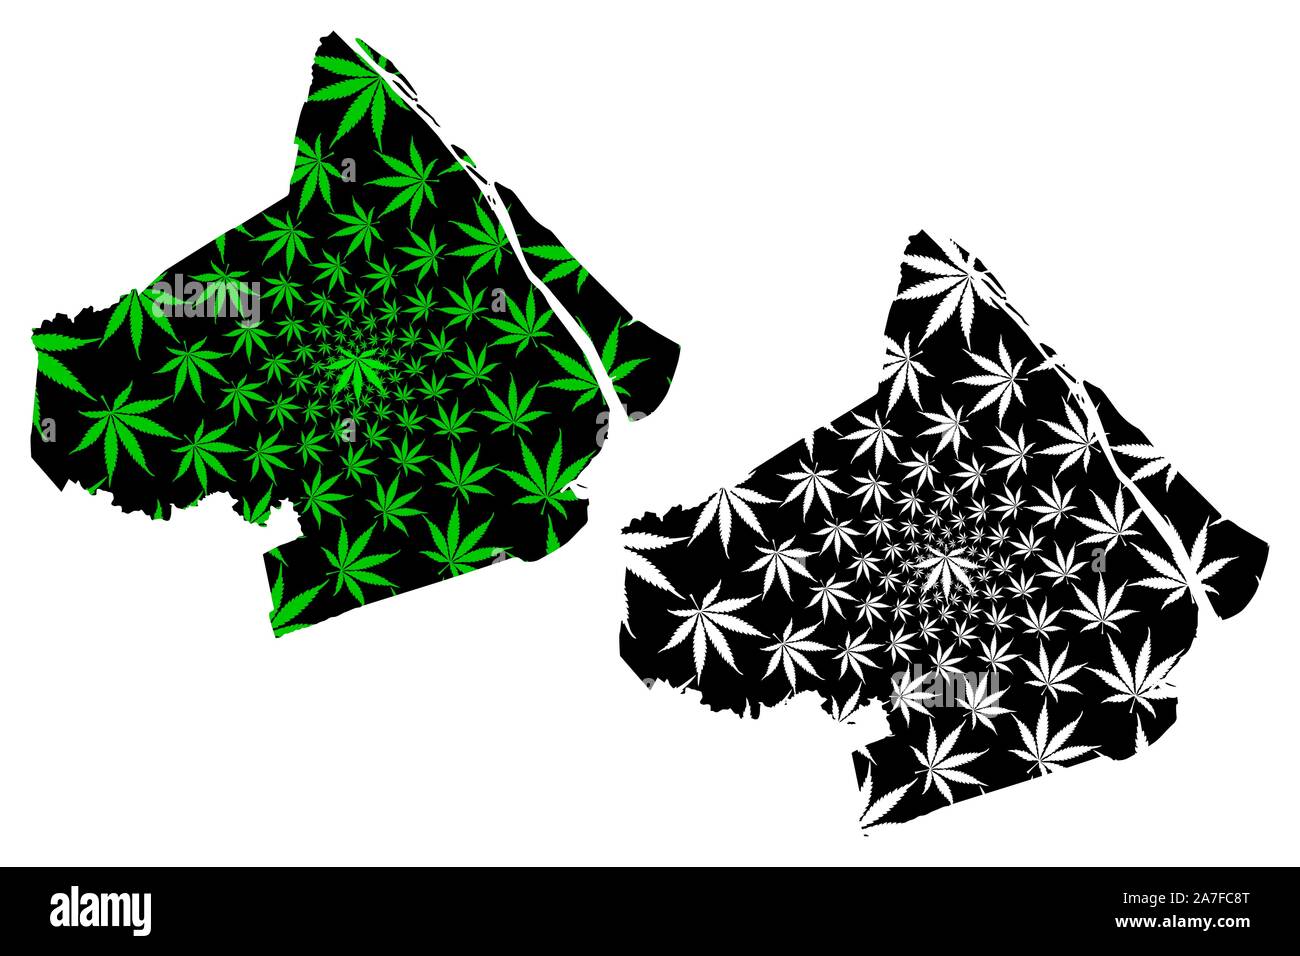 Soc Trang Provinz (Sozialistische Republik Vietnam, Unterteilungen von Vietnam) Karte cannabis Blatt grün und schwarz ausgelegt ist, Tinh Soc Trang, Karte von gemacht Stock Vektor